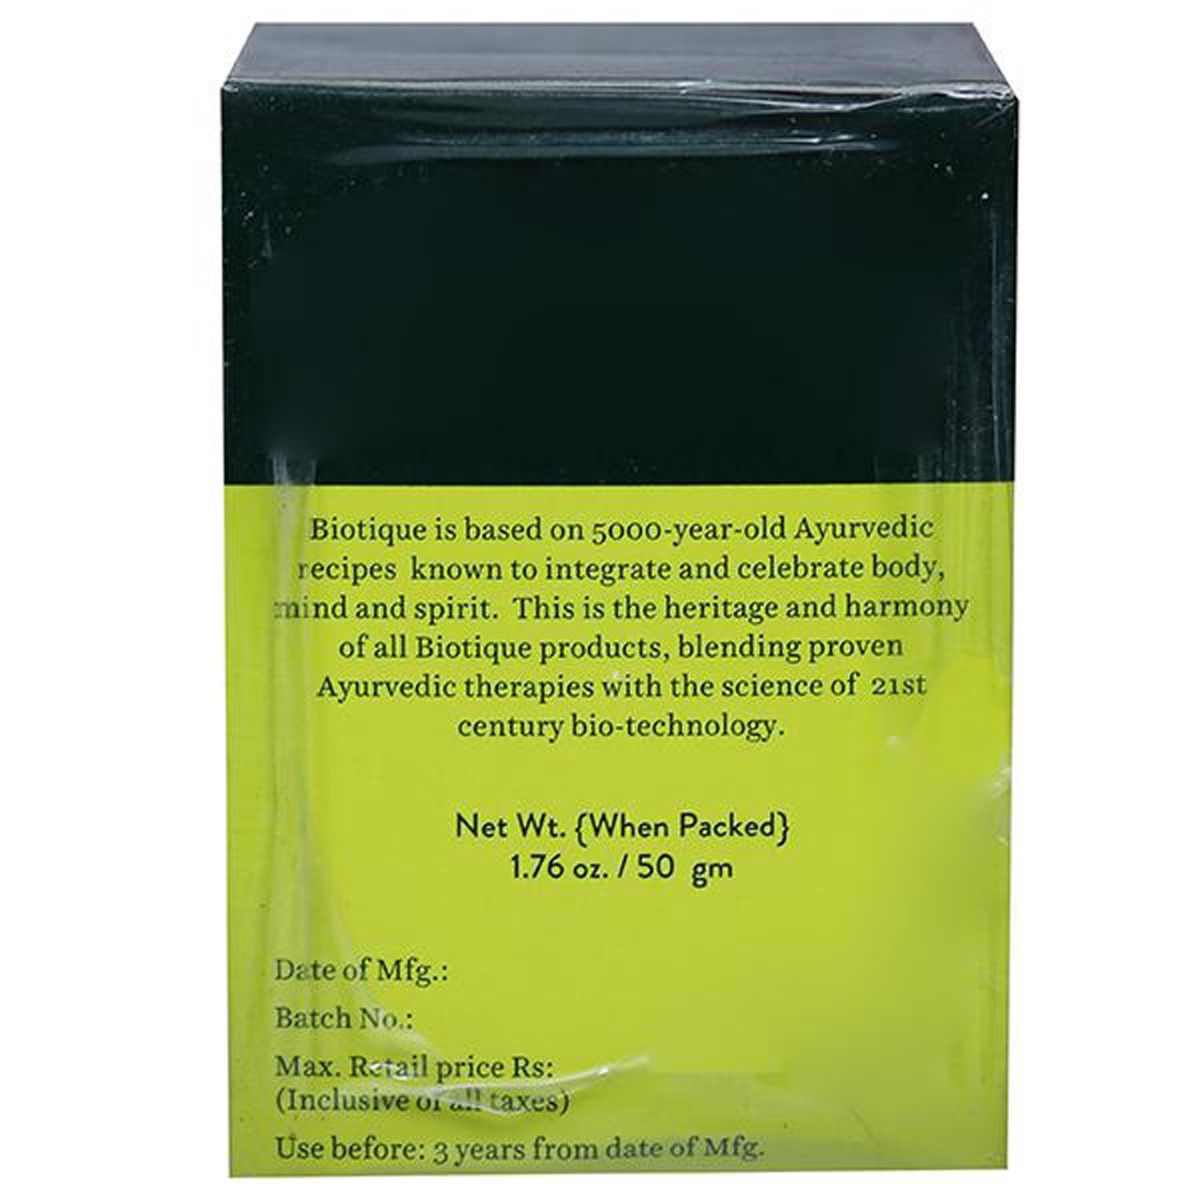 Biotique Bio Chlorophyll Oil Free Anti-Acne Gel, 50 gm, Pack of 1 